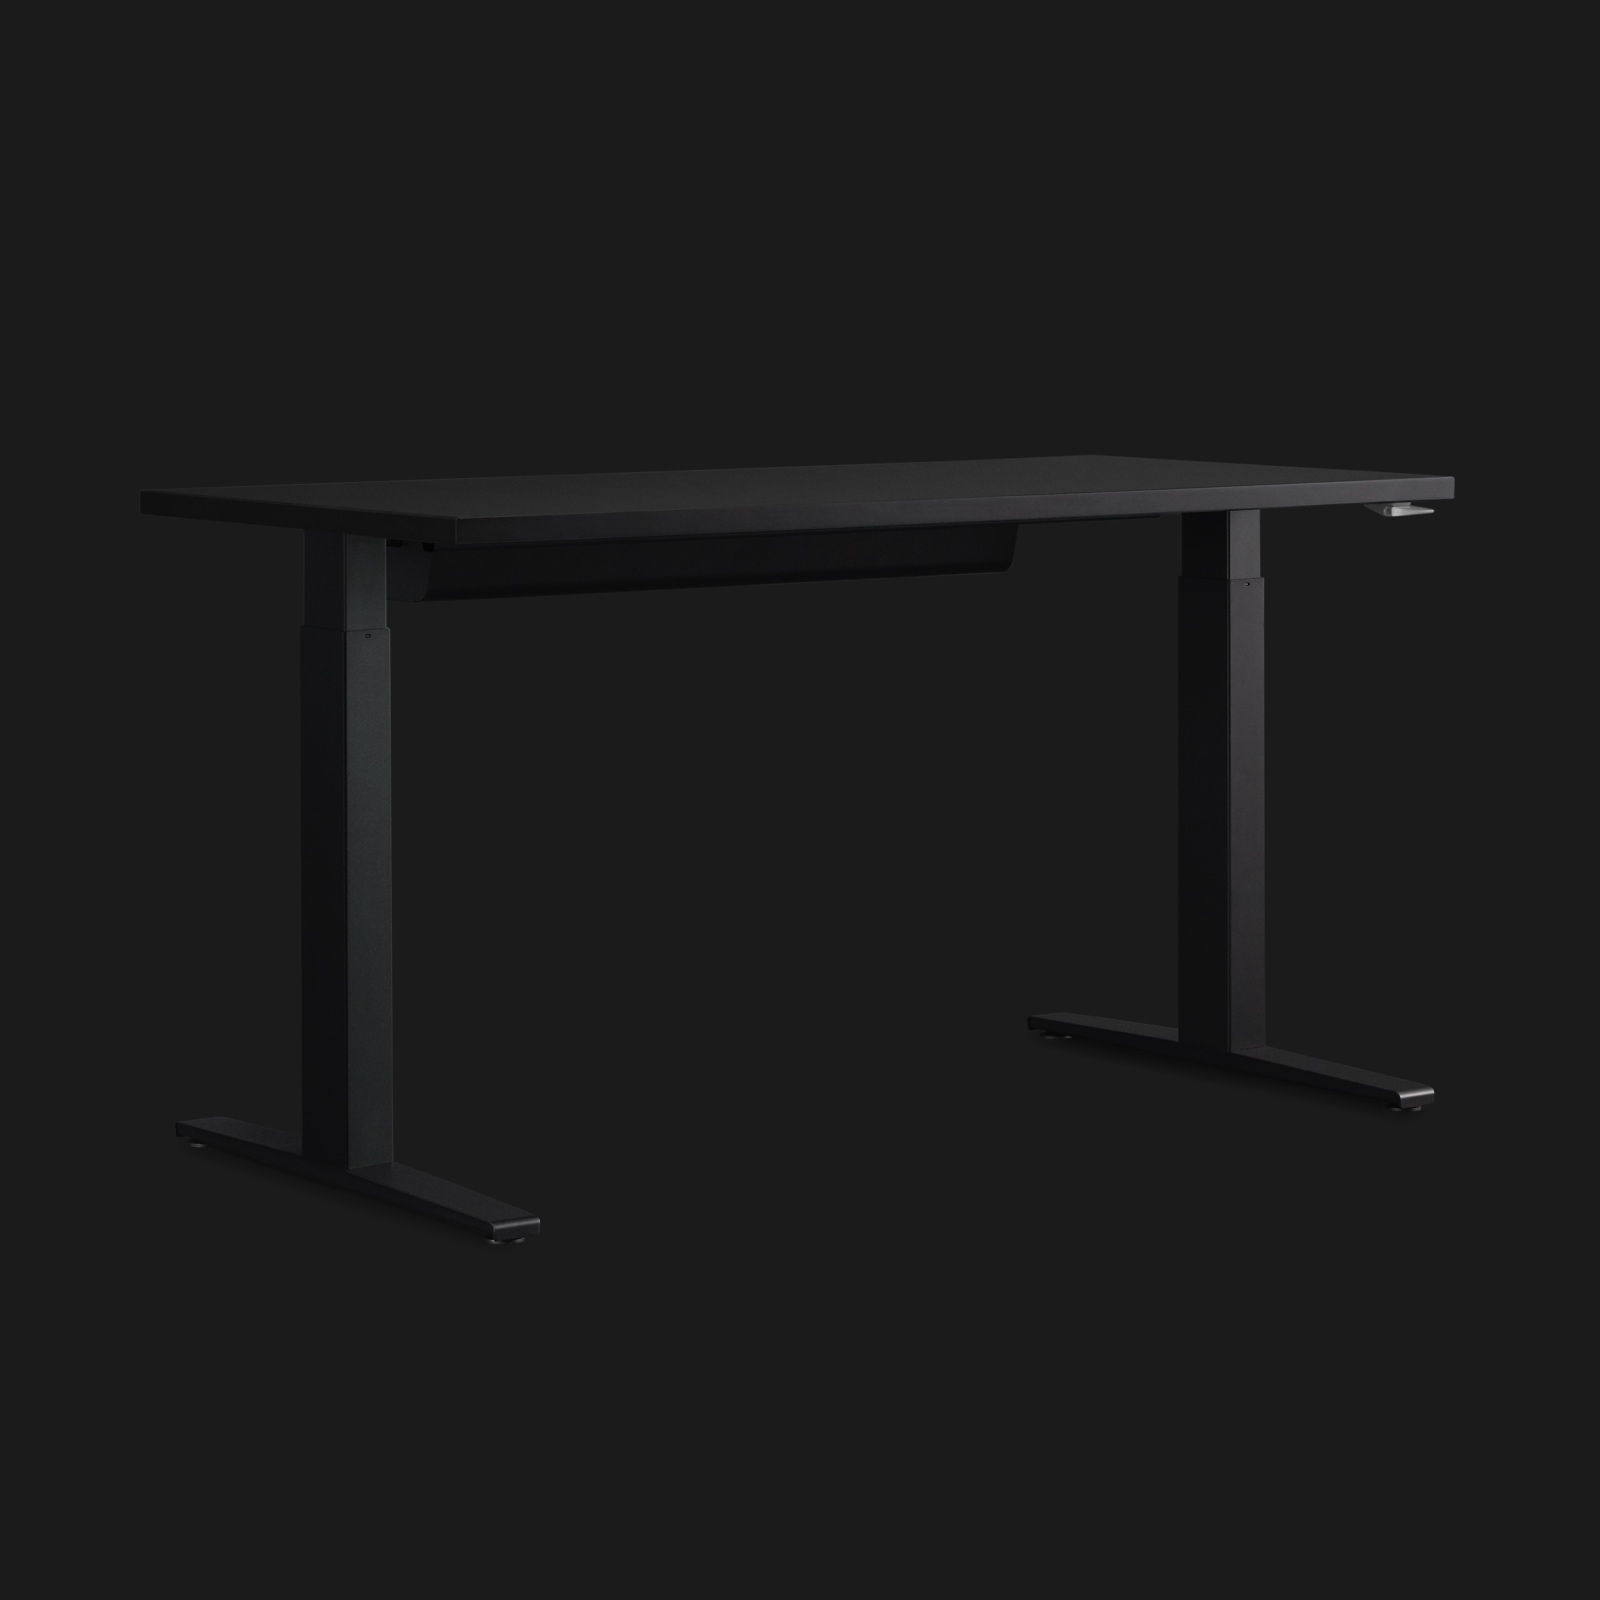 극적인 조명의 검은색 배경과 어떤 각도를 이루고 보이는 다크 그레이 높이 조절형 Motia Gaming Desk.